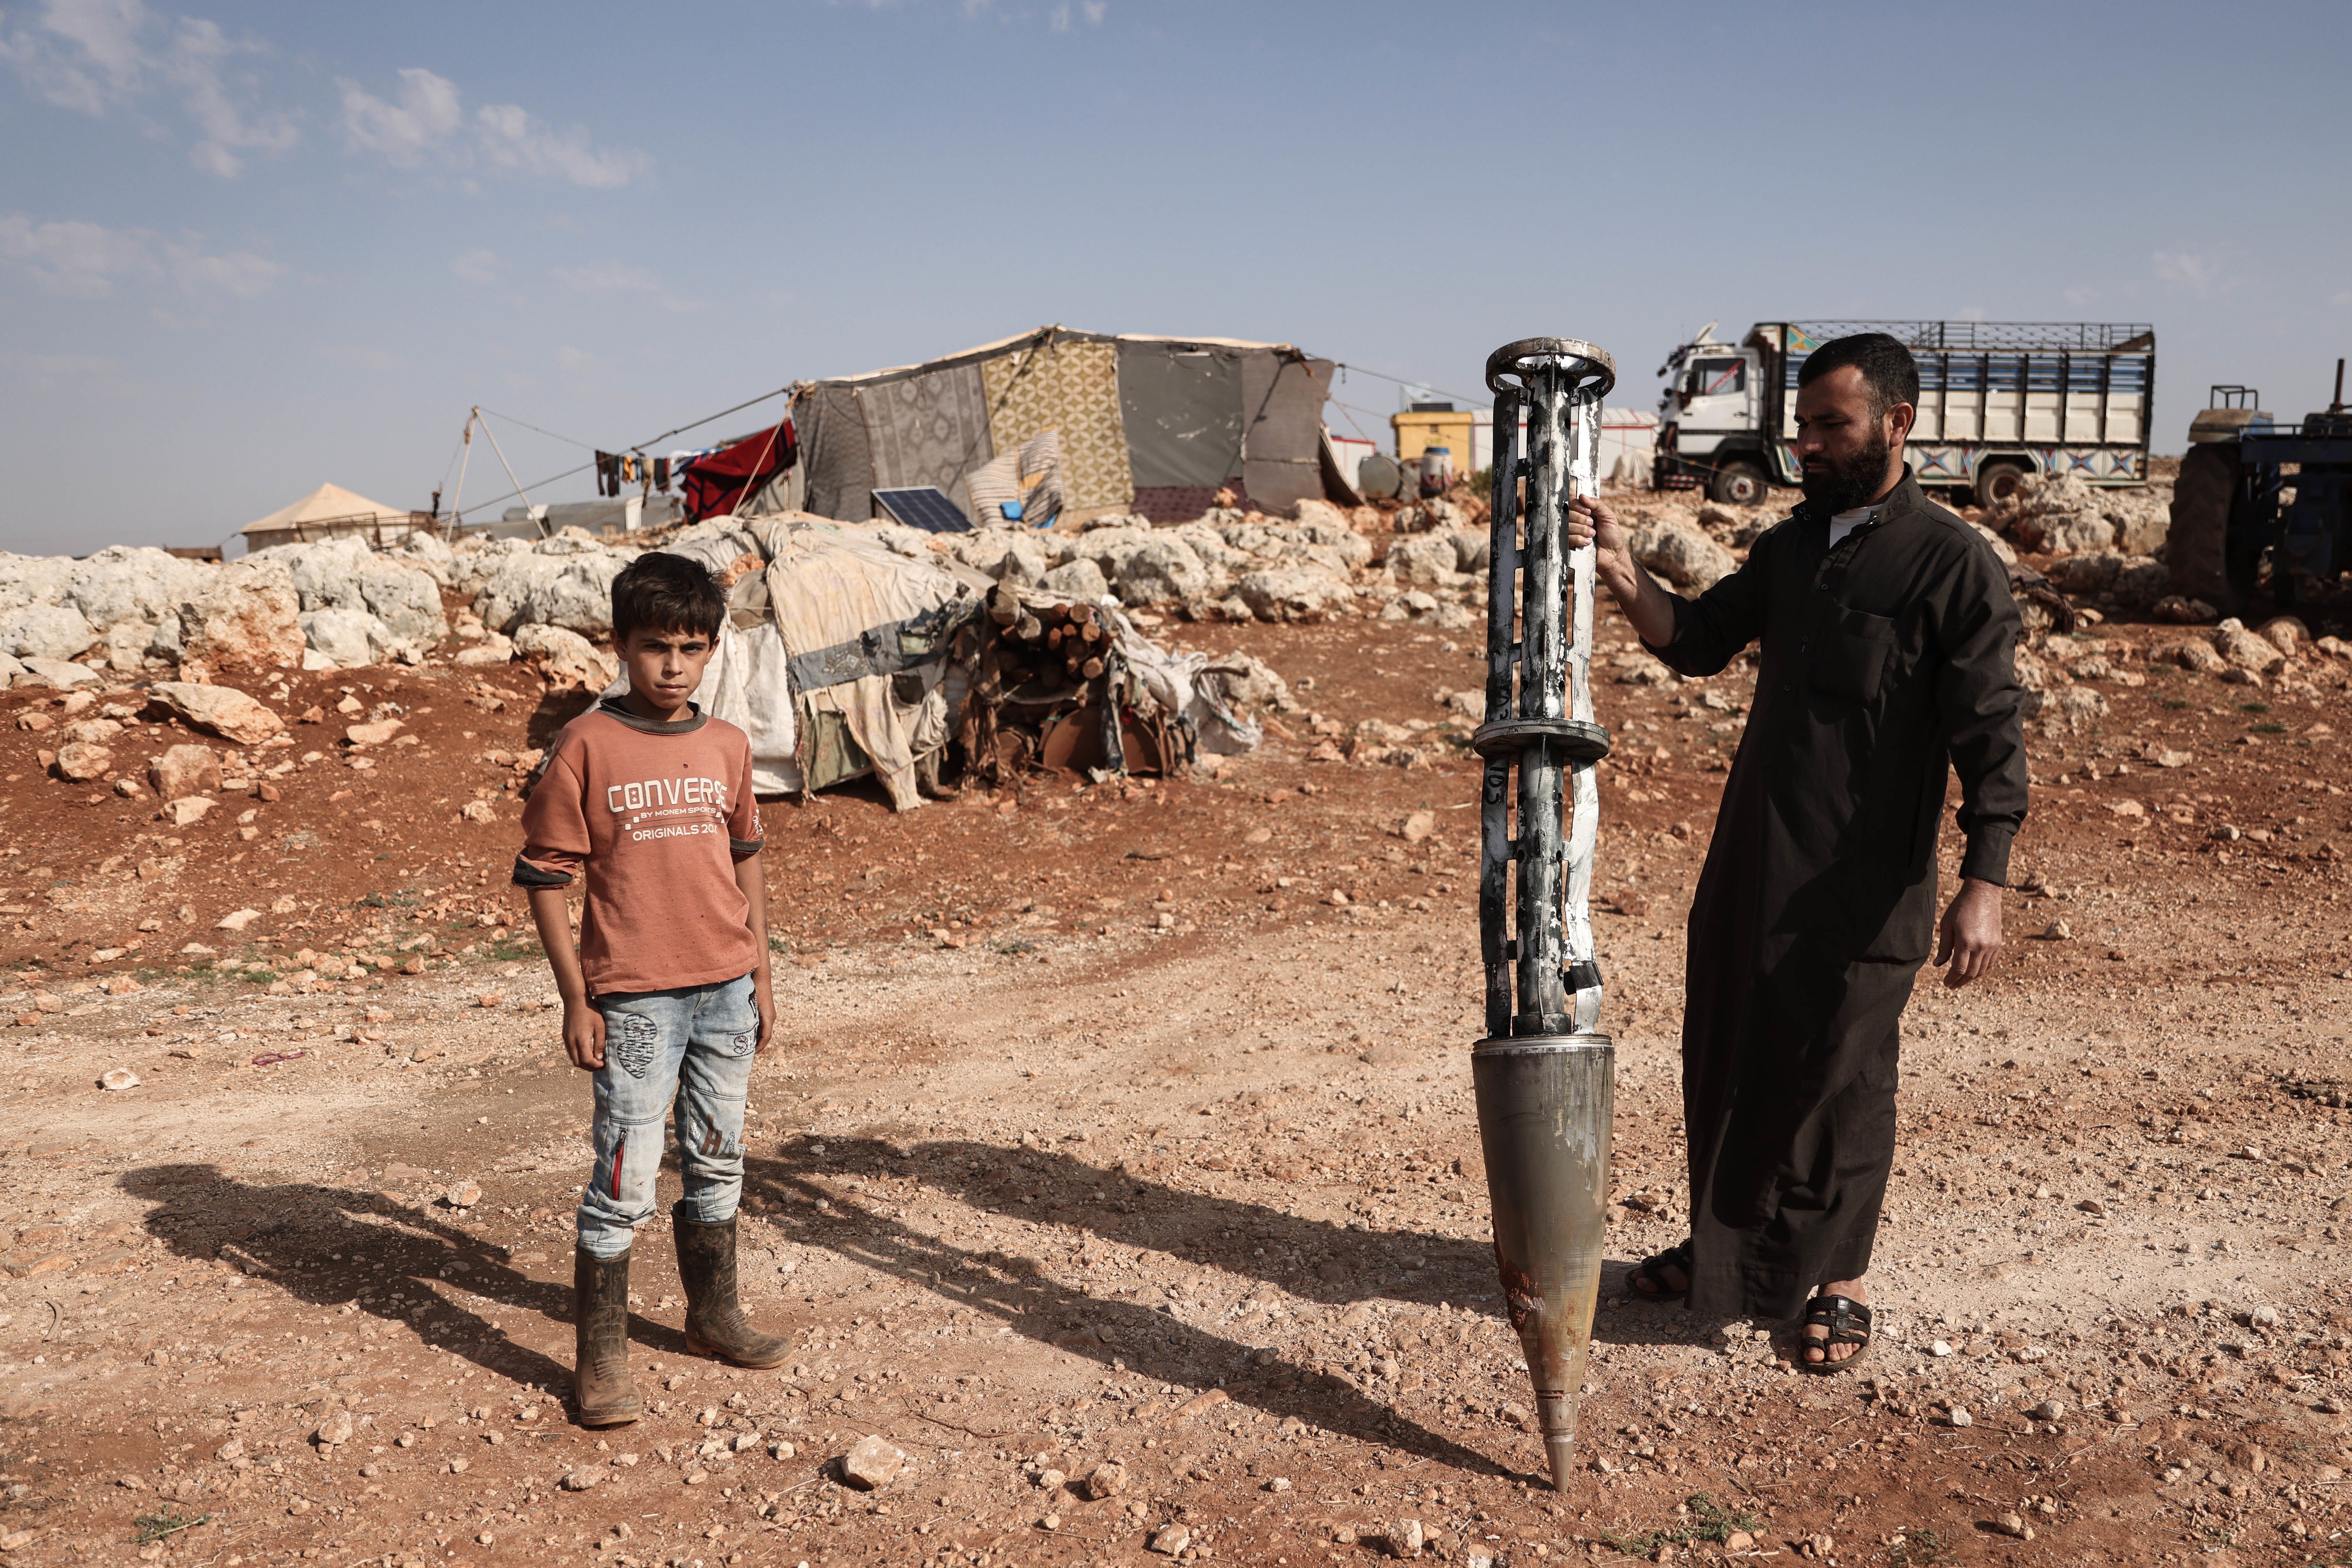 Касетний ракетний боєприпас, застосований у Сирії, де були поранені 6 дітей / © Getty Images